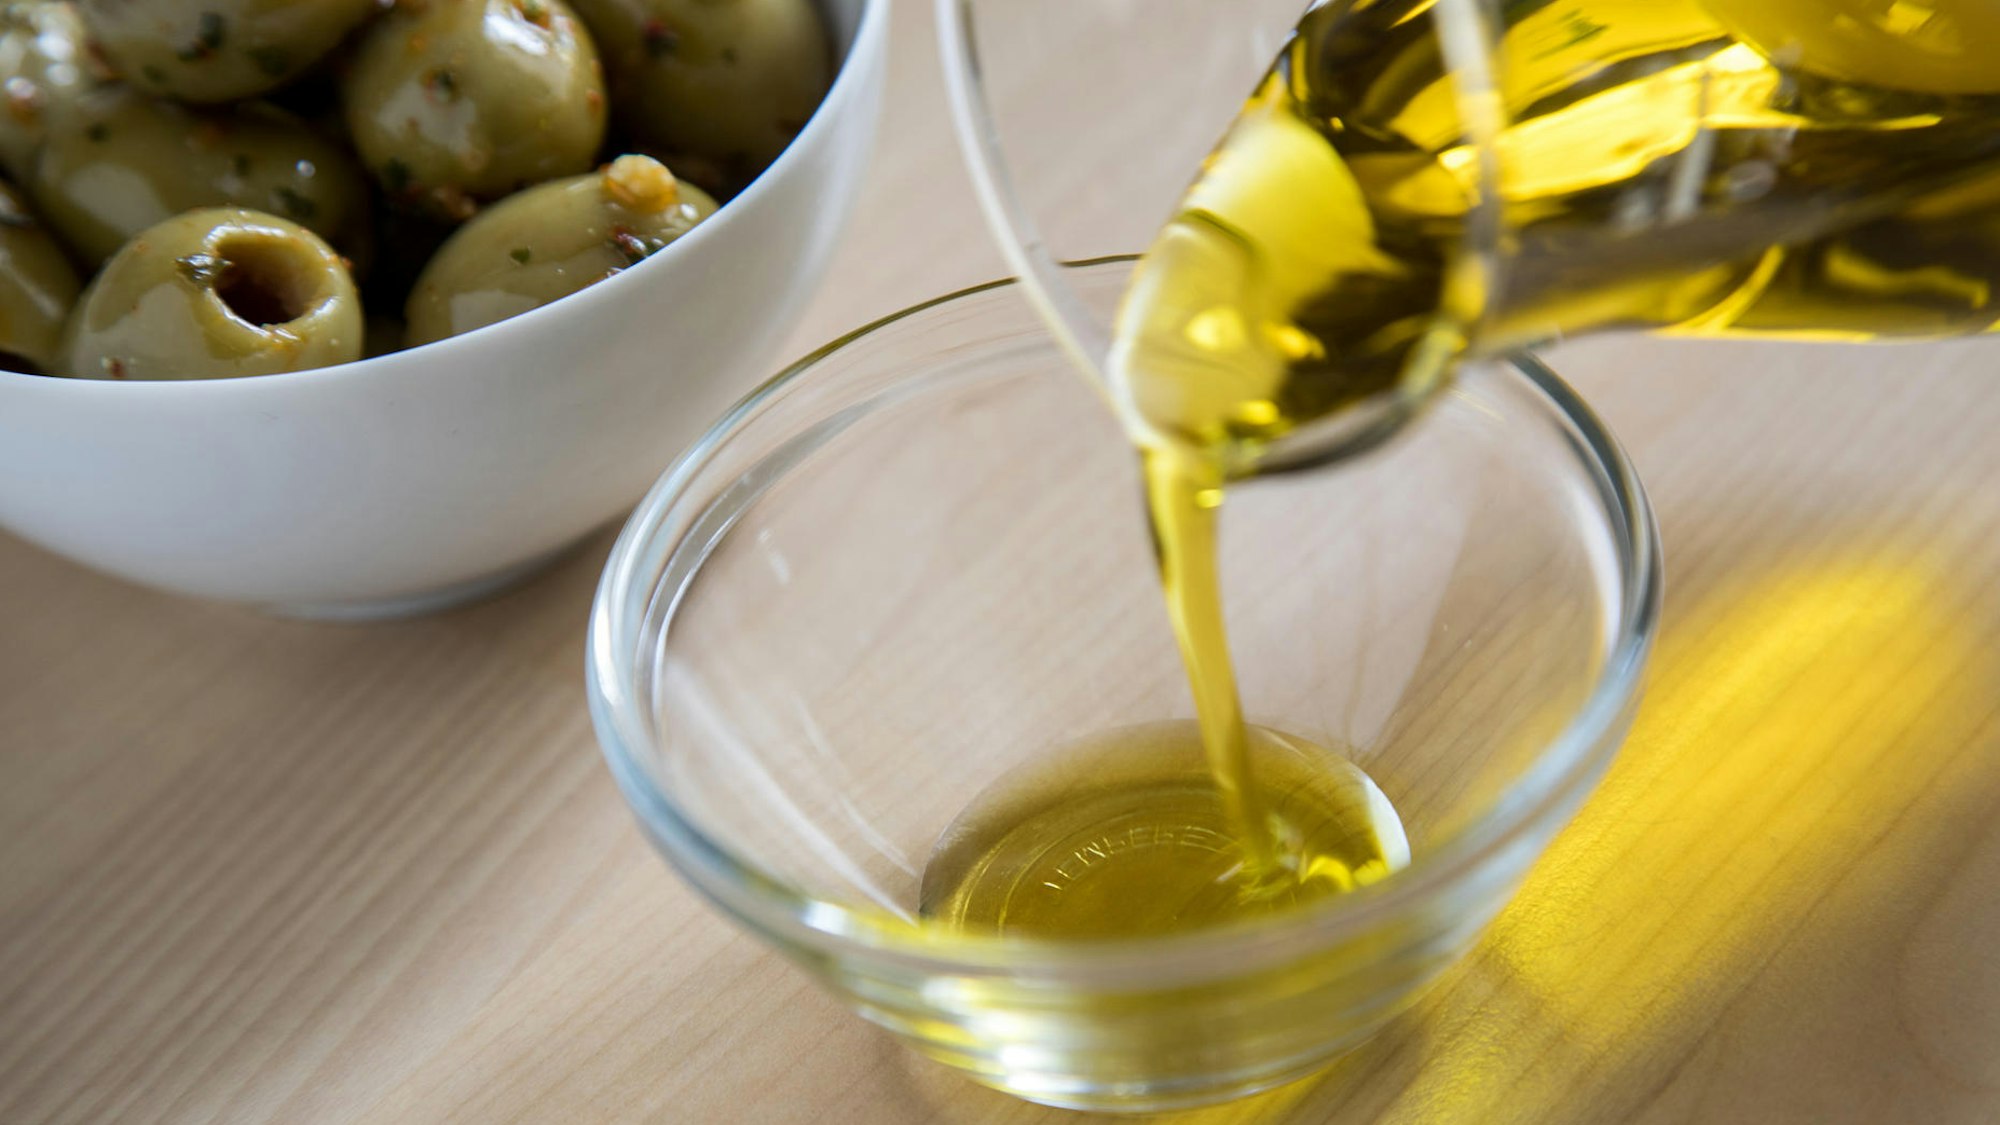 Aus einer Glaskaraffe wird Olivenöl in eine Glasschale gegossen, im Hintergrund eine Porzellanschale mit grünen Oliven.